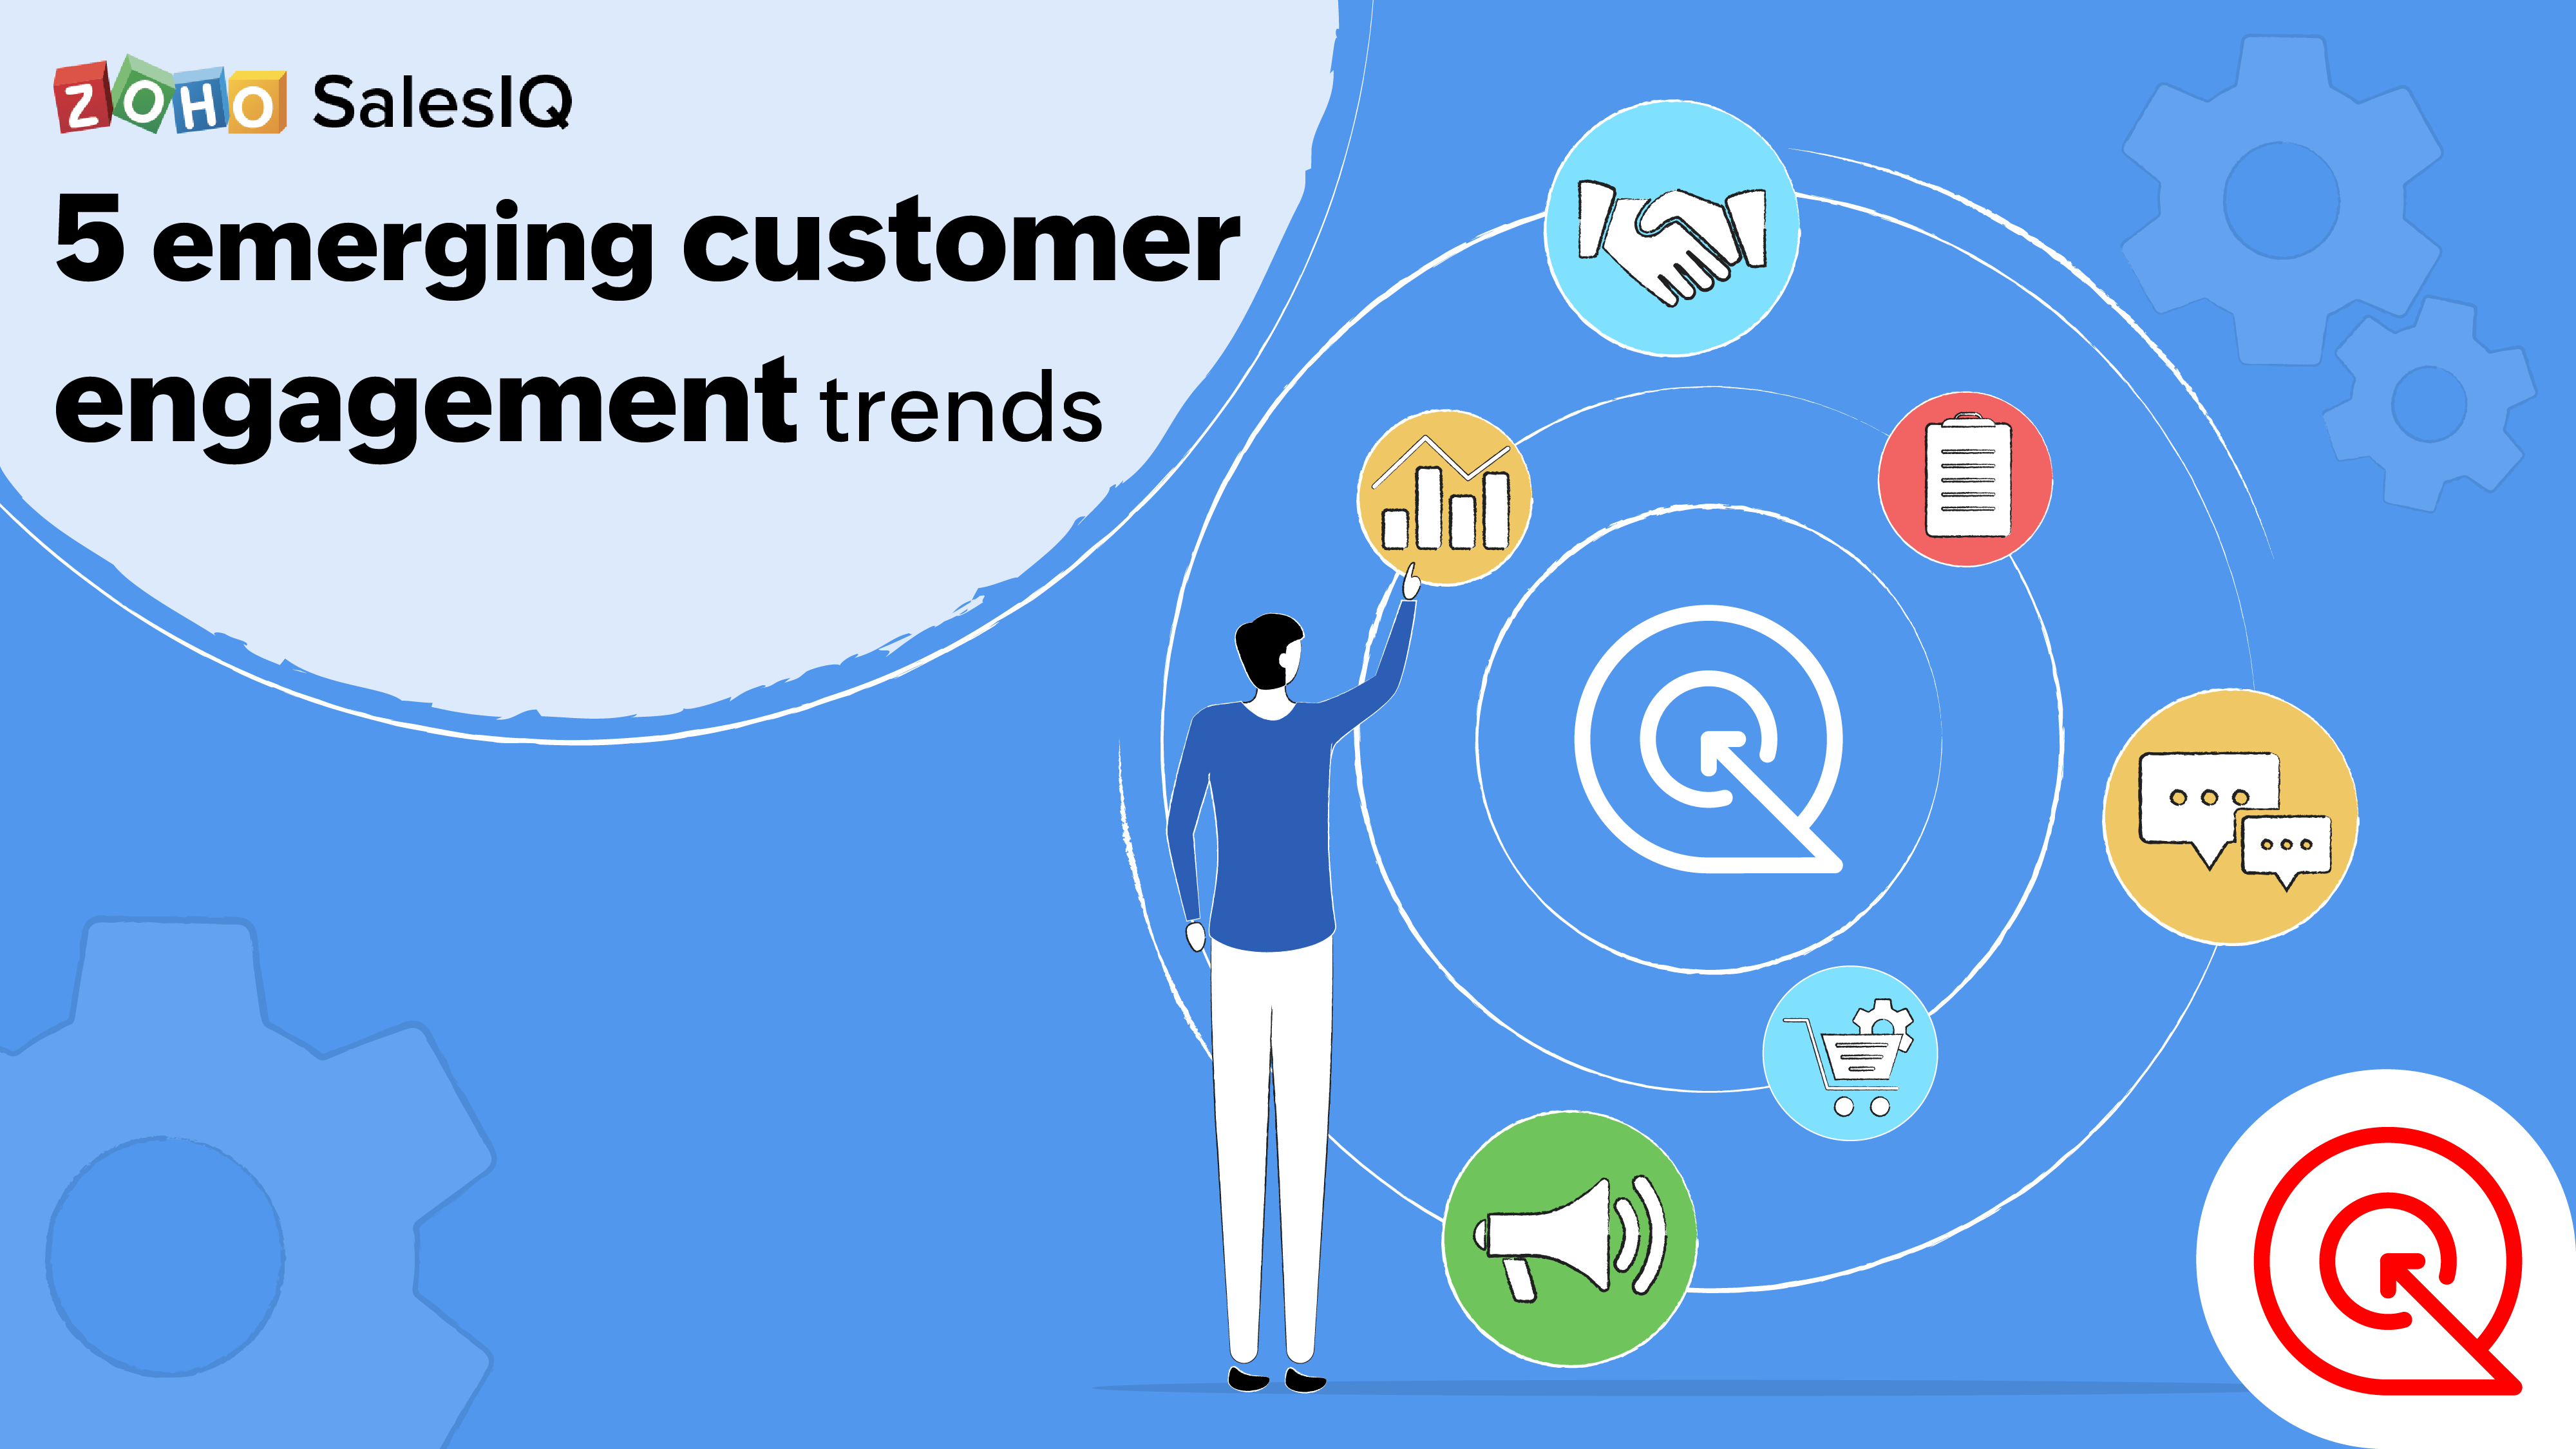 5 Emerging customer engagement trends | Zoho SalesIQ